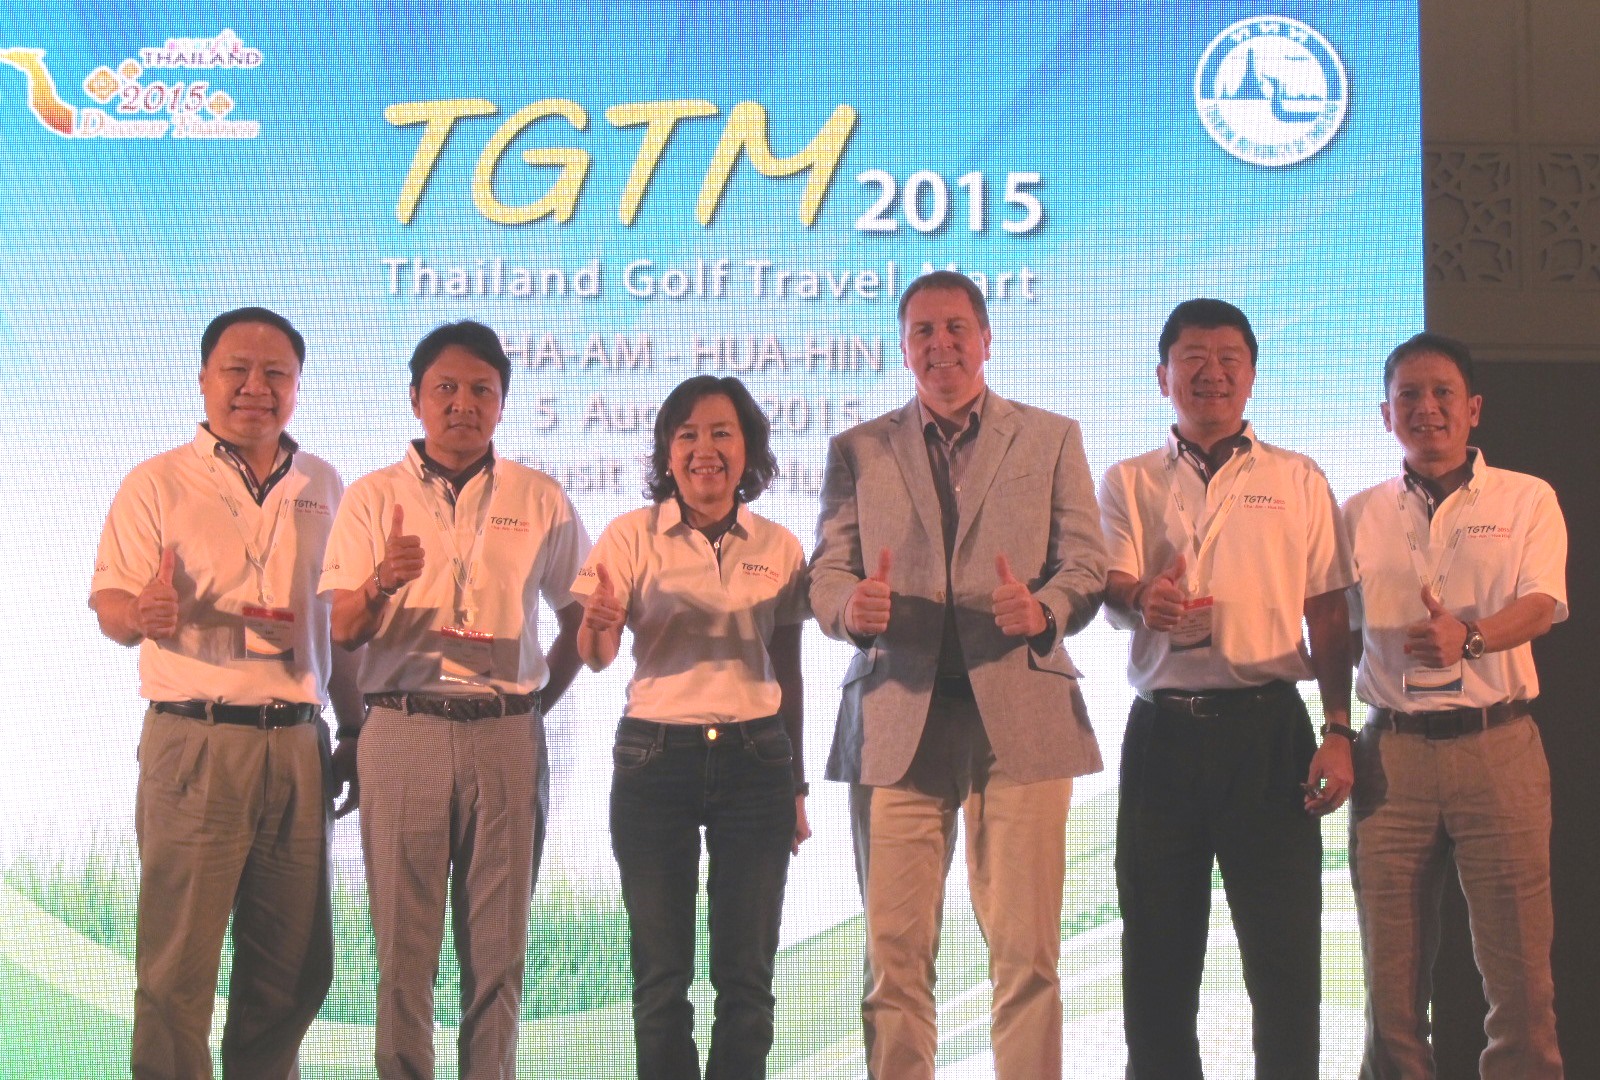 「タイランド・ゴルフトラベルマート２０１５」で演説したタイ国政府観光庁のジュタポーン・ルーンローンアーサー総裁代理（左から３人目）